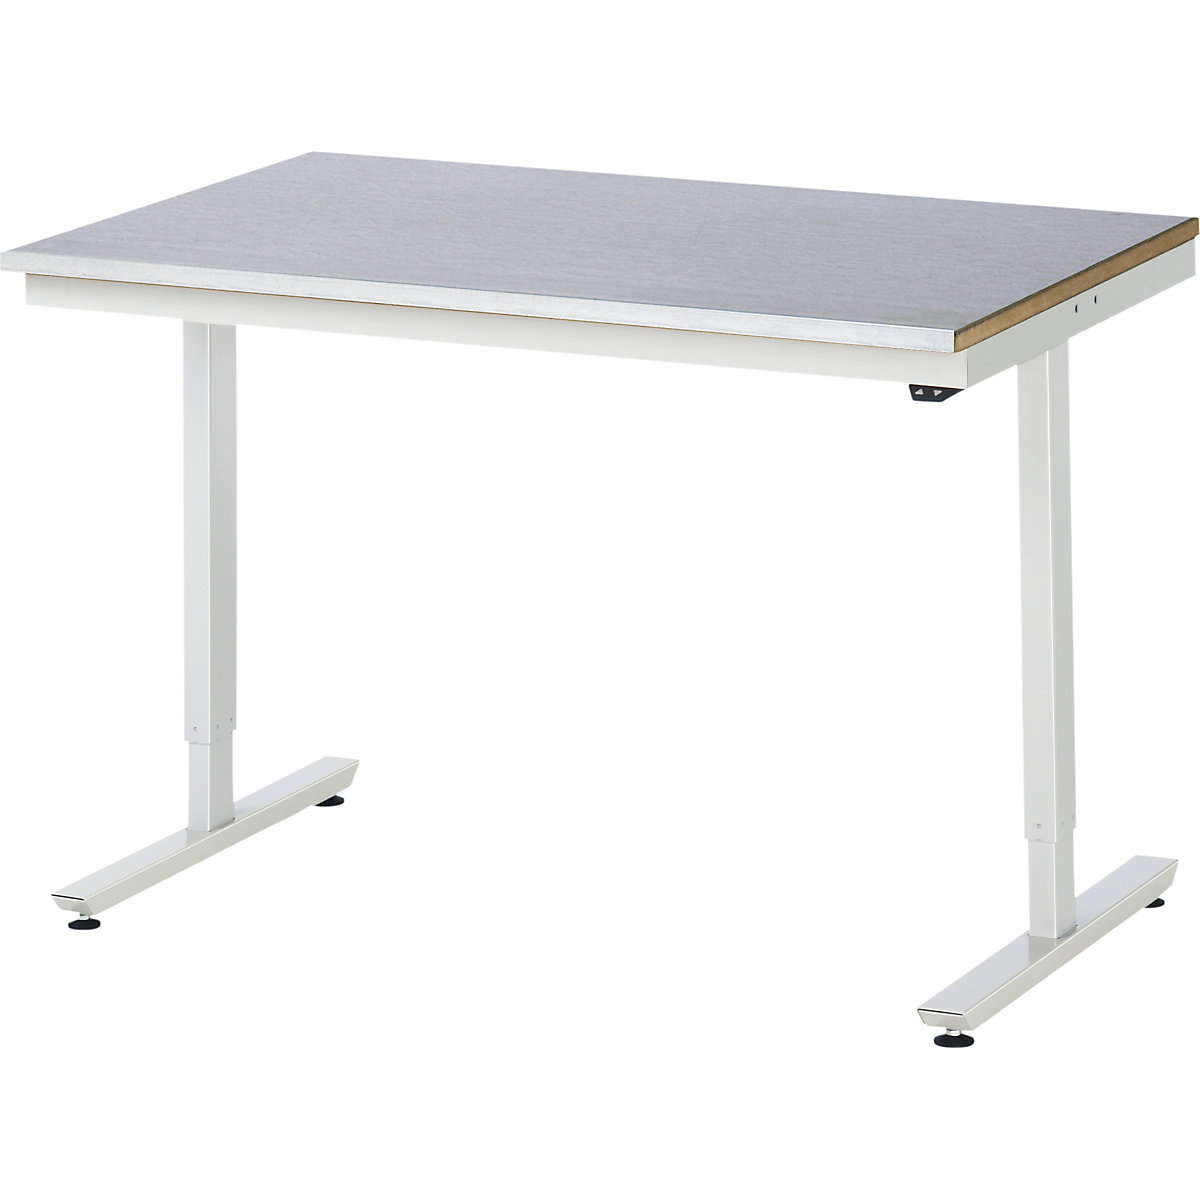 Psací stůl s elektrickým přestavováním výšky – RAU, ocelový povlak, nosnost 150 kg, š x h 1250 x 800 mm-11